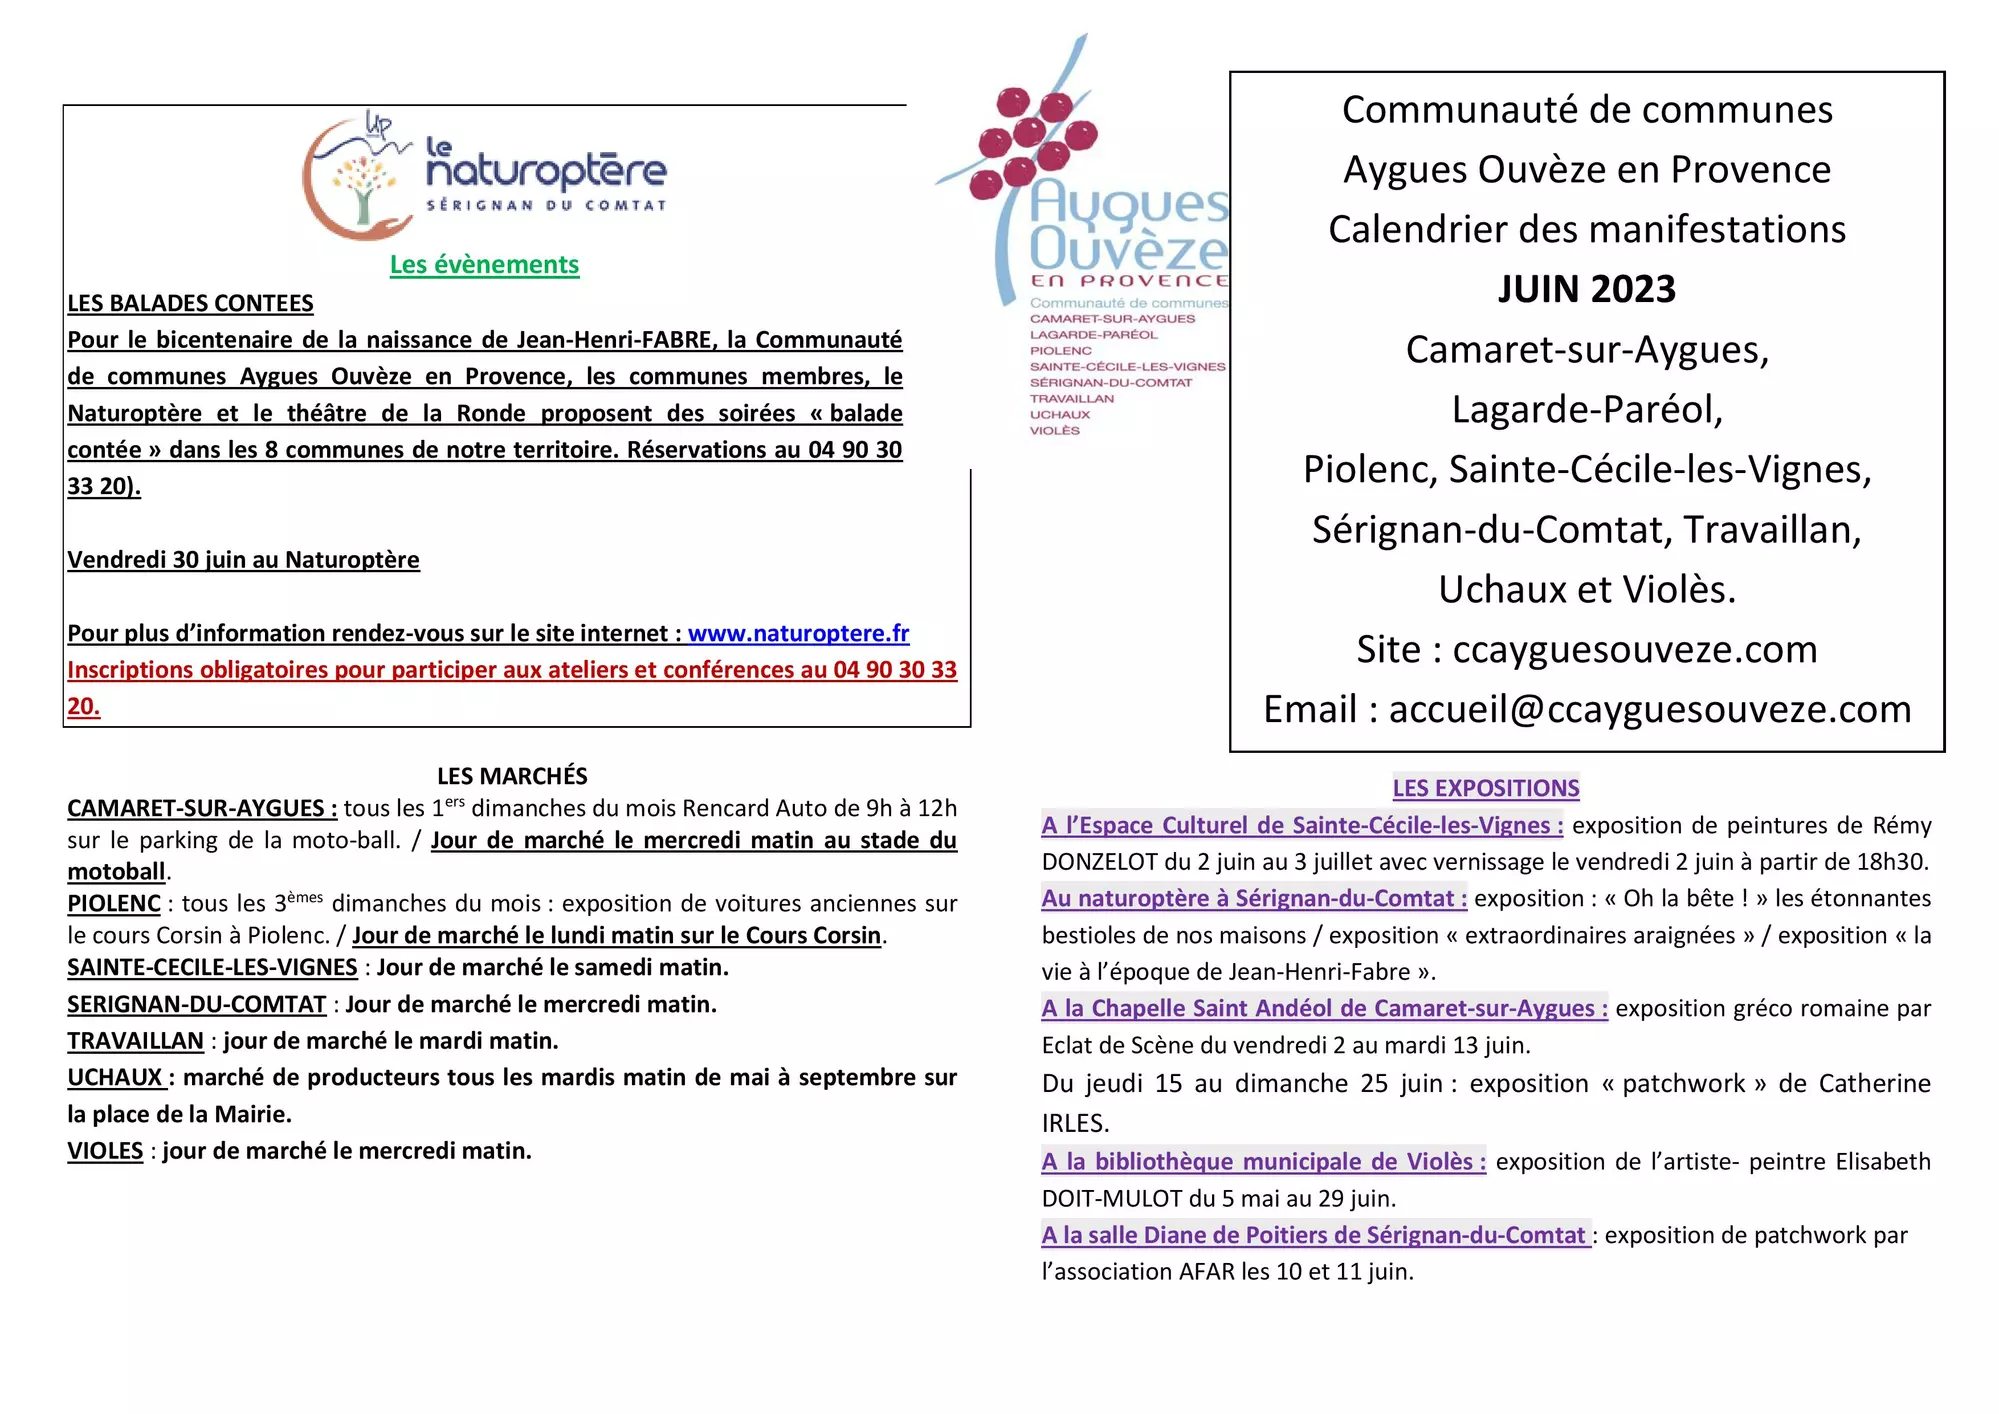 Agenda des manifestations du mois de juin sur la Communauté de communes Aygues Ouvèze en Provence